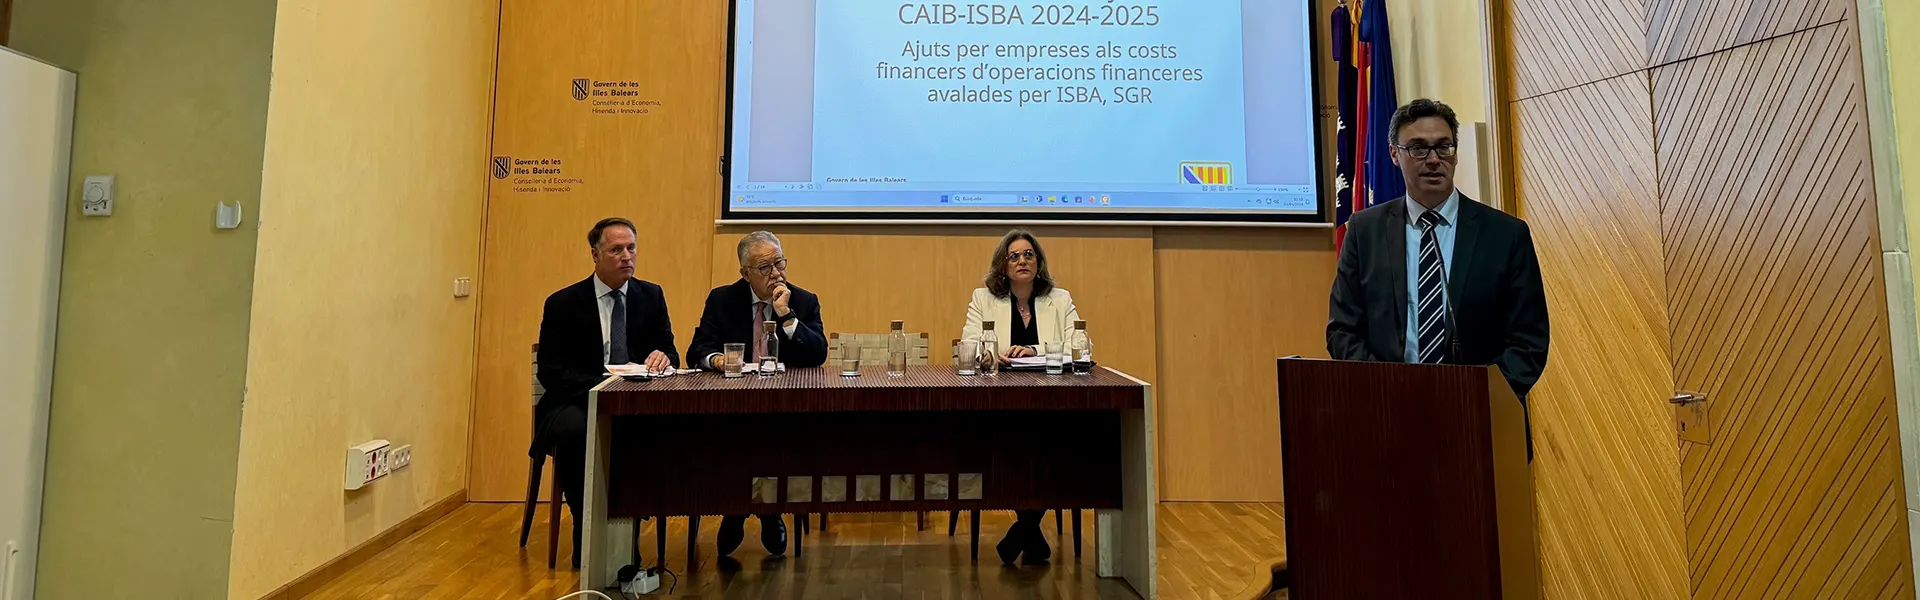 El Govern presenta la nueva línea de ayudas CAIB ISBA con 18 millones para los dos próximos años ultimas noticias cesgar